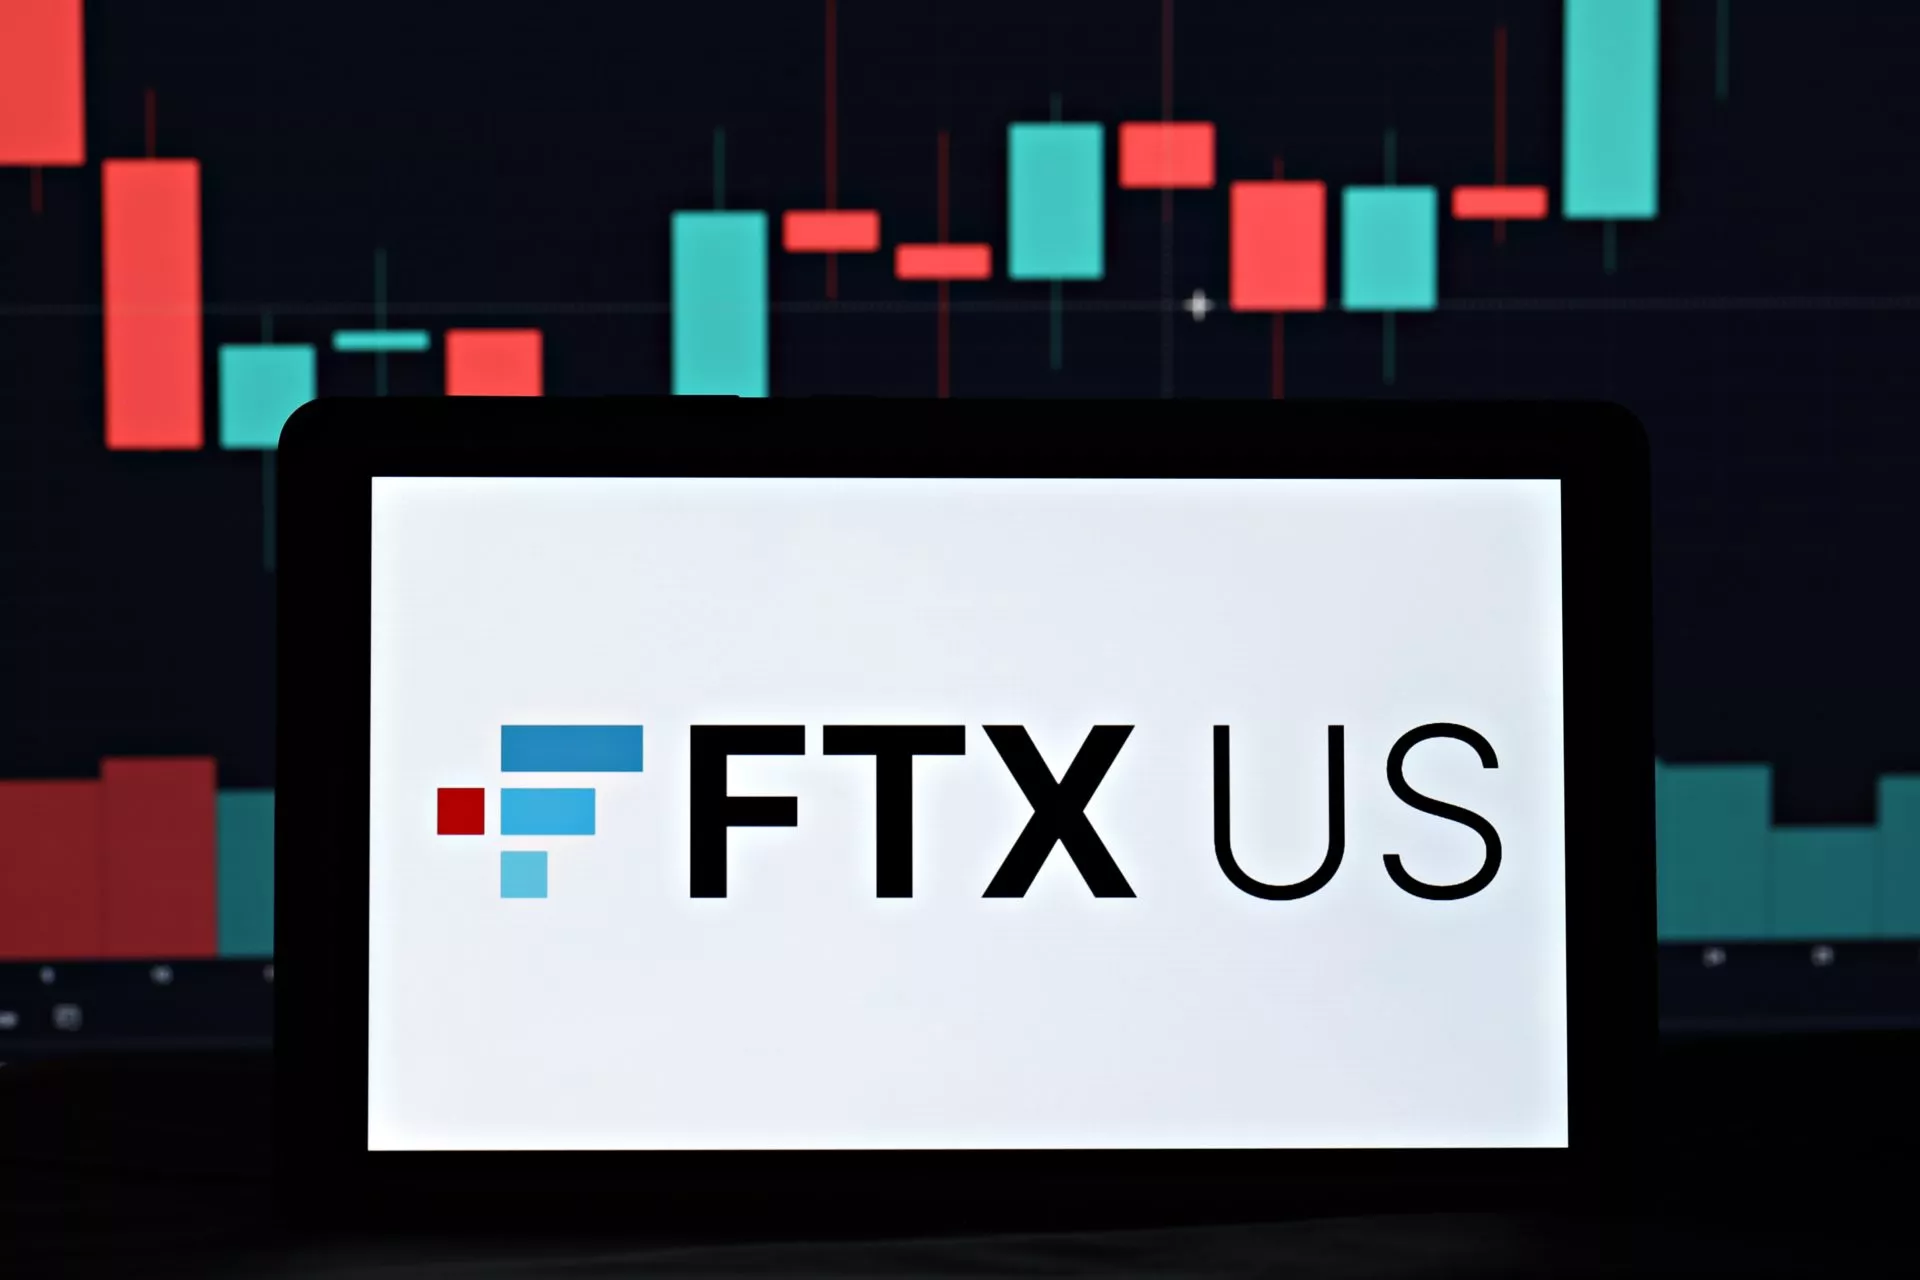 FTX US lanceert aandelenhandel met stablecoins